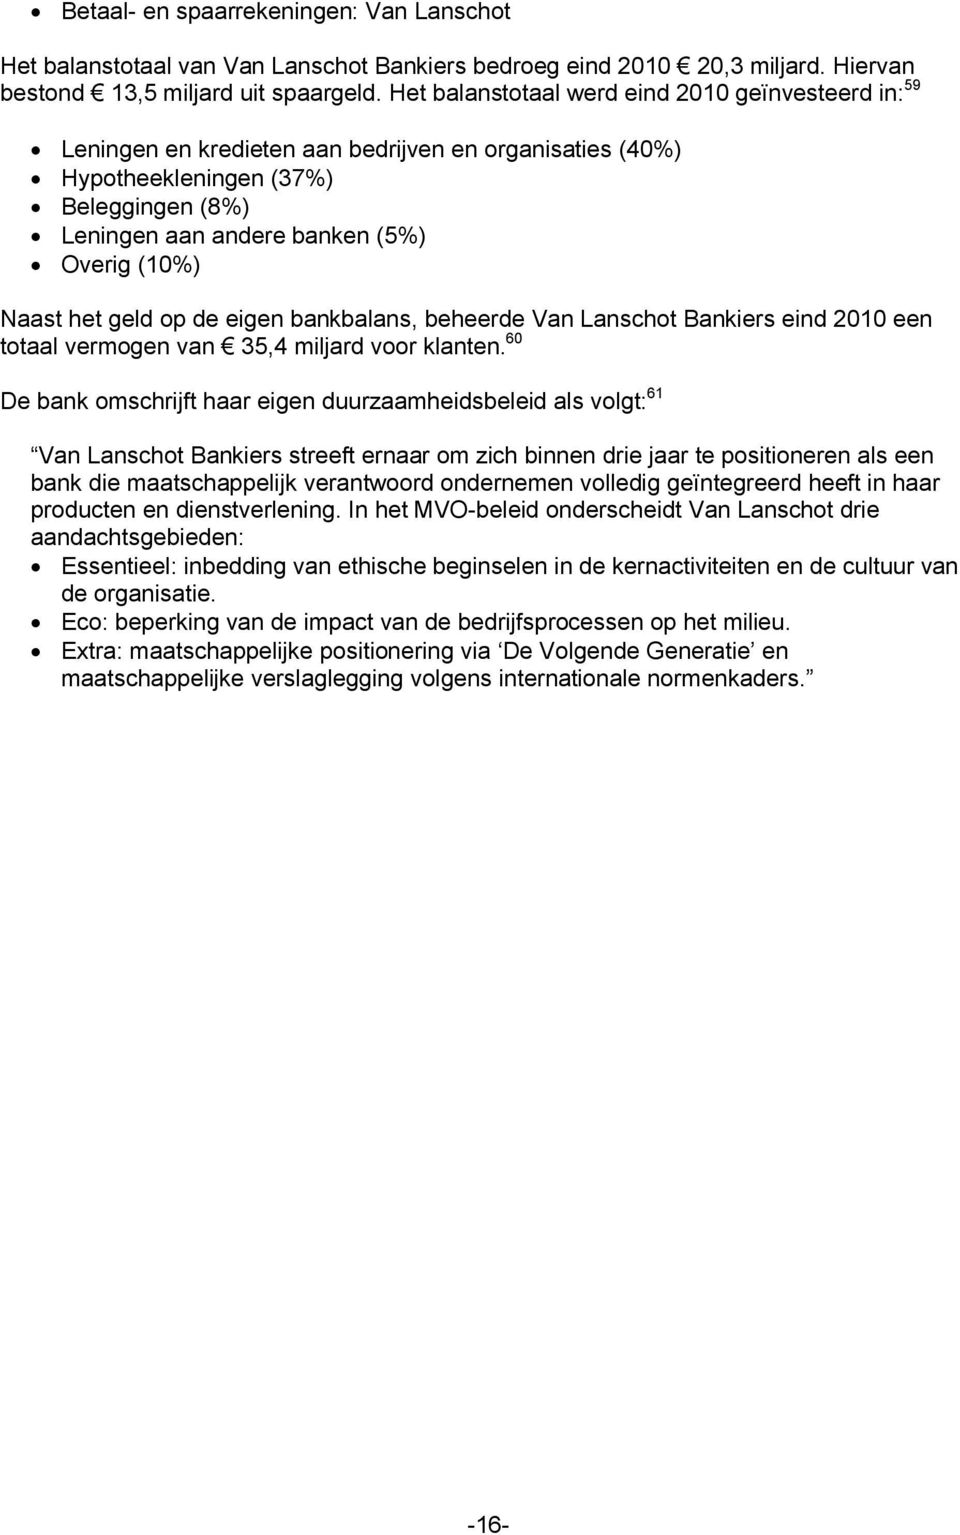 Naast het geld op de eigen bankbalans, beheerde Van Lanschot Bankiers eind 2010 een totaal vermogen van 35,4 miljard voor klanten.